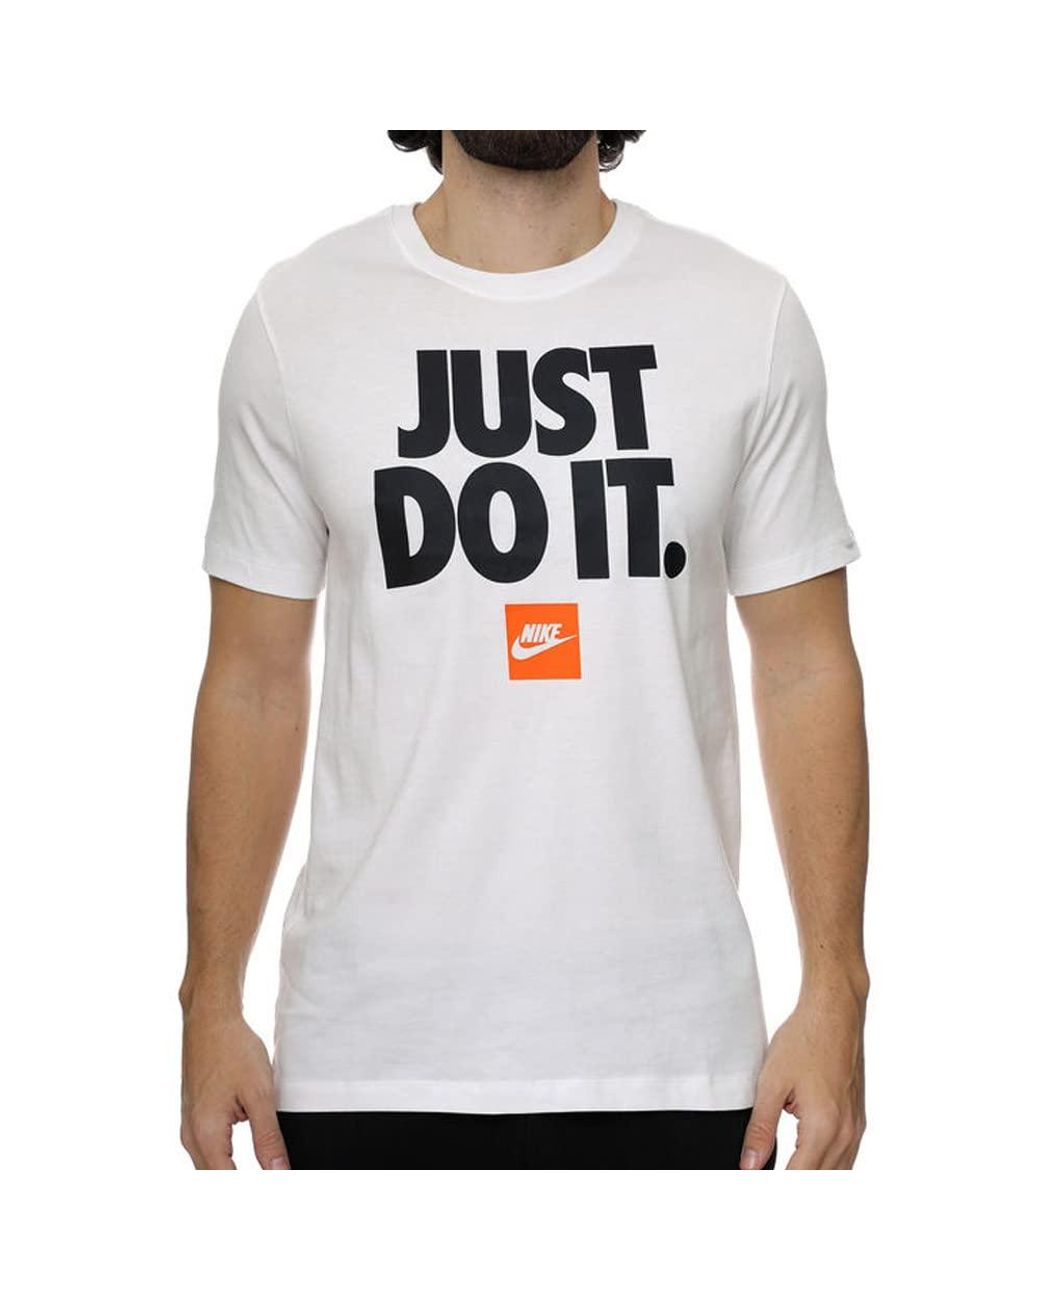 T-shirt Nike Sportswear pour Homme - DZ2993-100 - Blanc